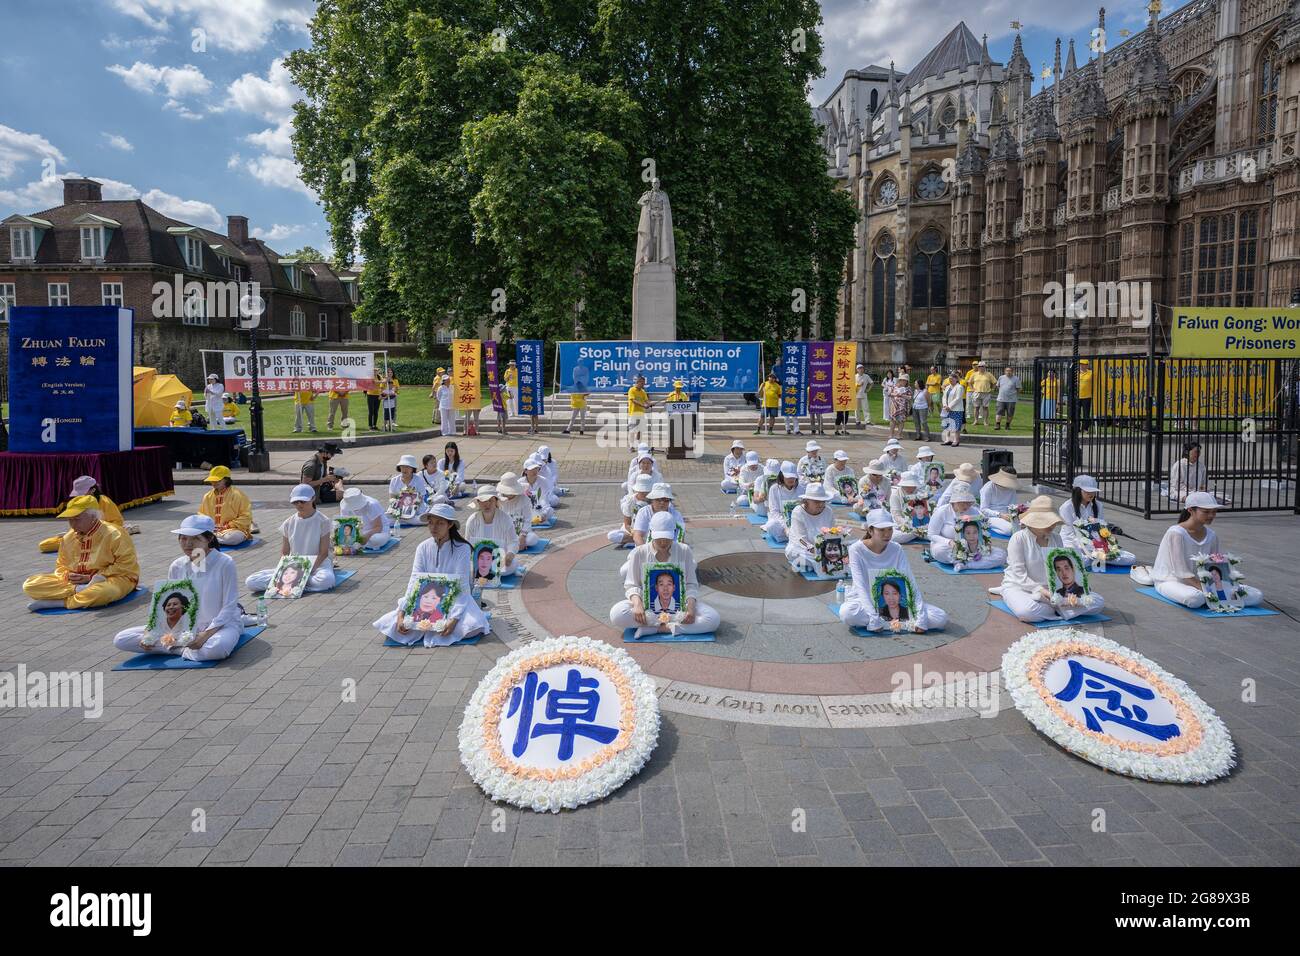 Londres, Royaume-Uni. 18 juillet 2021. 'Couronner la persécution de Falun Gong en Chine' proteste dans le vieux palais Yard. En 1999, le parti communiste chinois (PCC) a interdit le Falun Gong en Chine et a commencé à persécuter brutalement les pratiquants du Falun Gong dans le but de l'éliminer entièrement. Credit: Guy Corbishley/Alamy Live News Banque D'Images